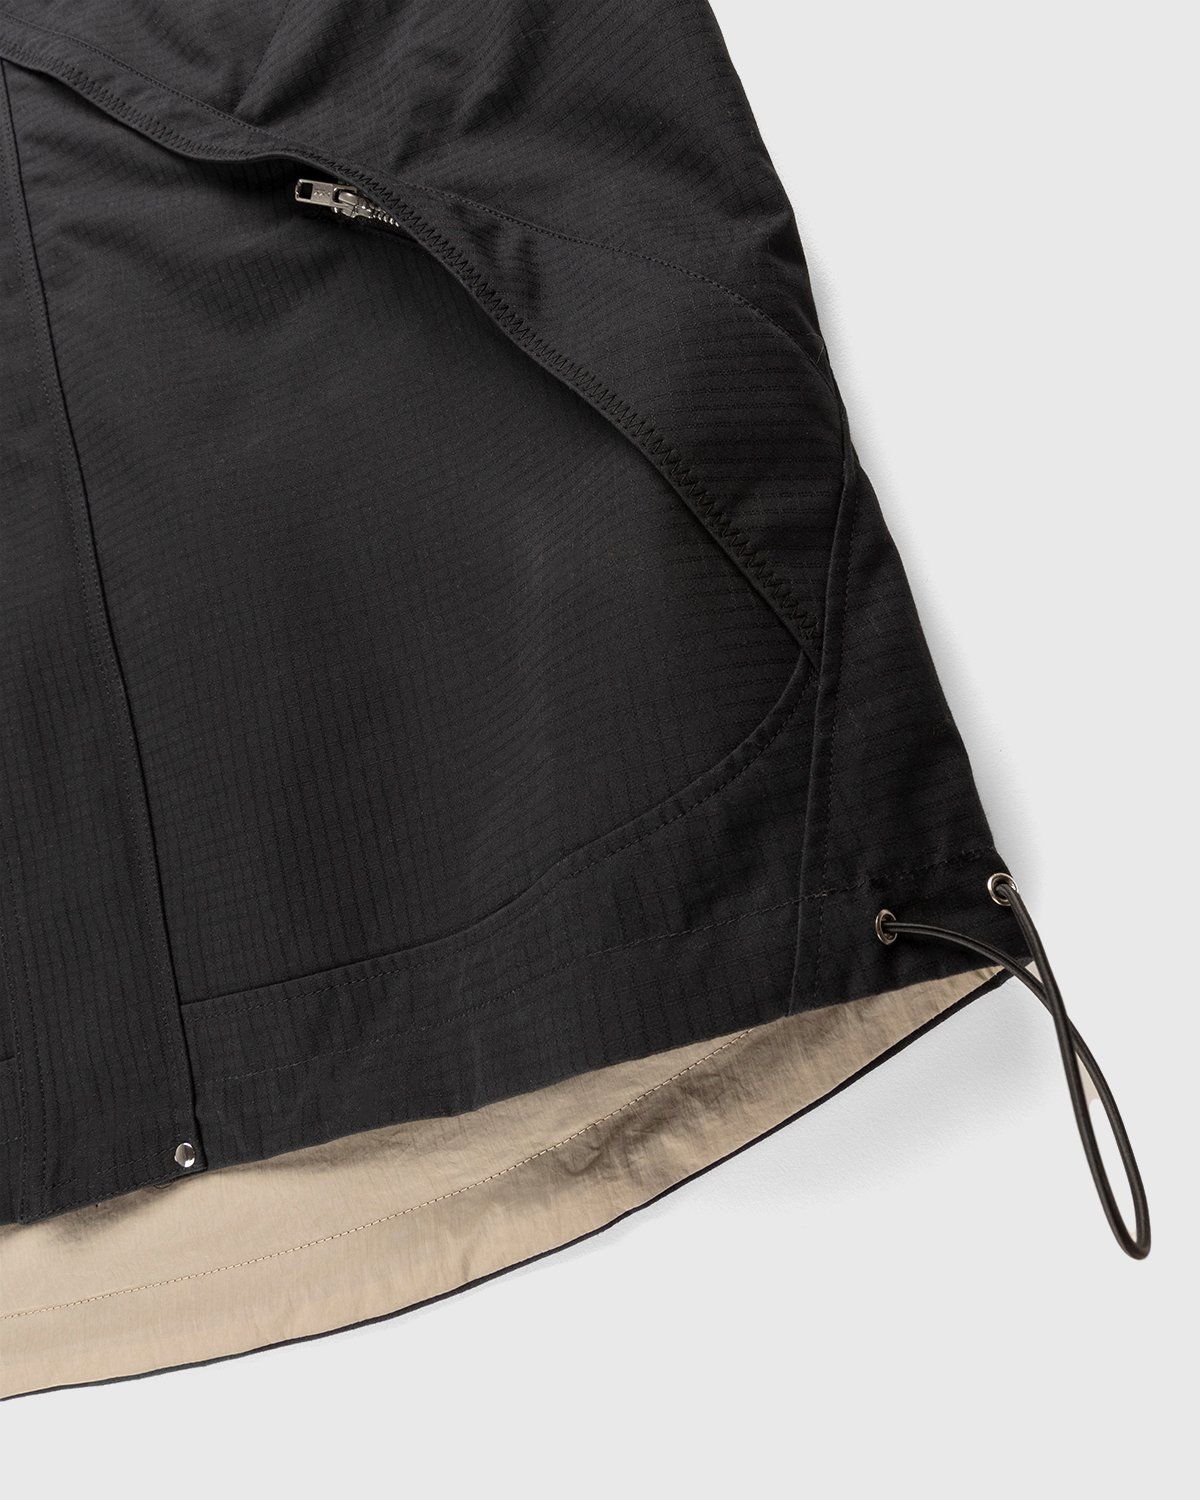 Arnar Mar Jonsson – Ventile Cross Pocket Outerwear Jacket Lava Beige - Windbreakers - Brown - Image 5